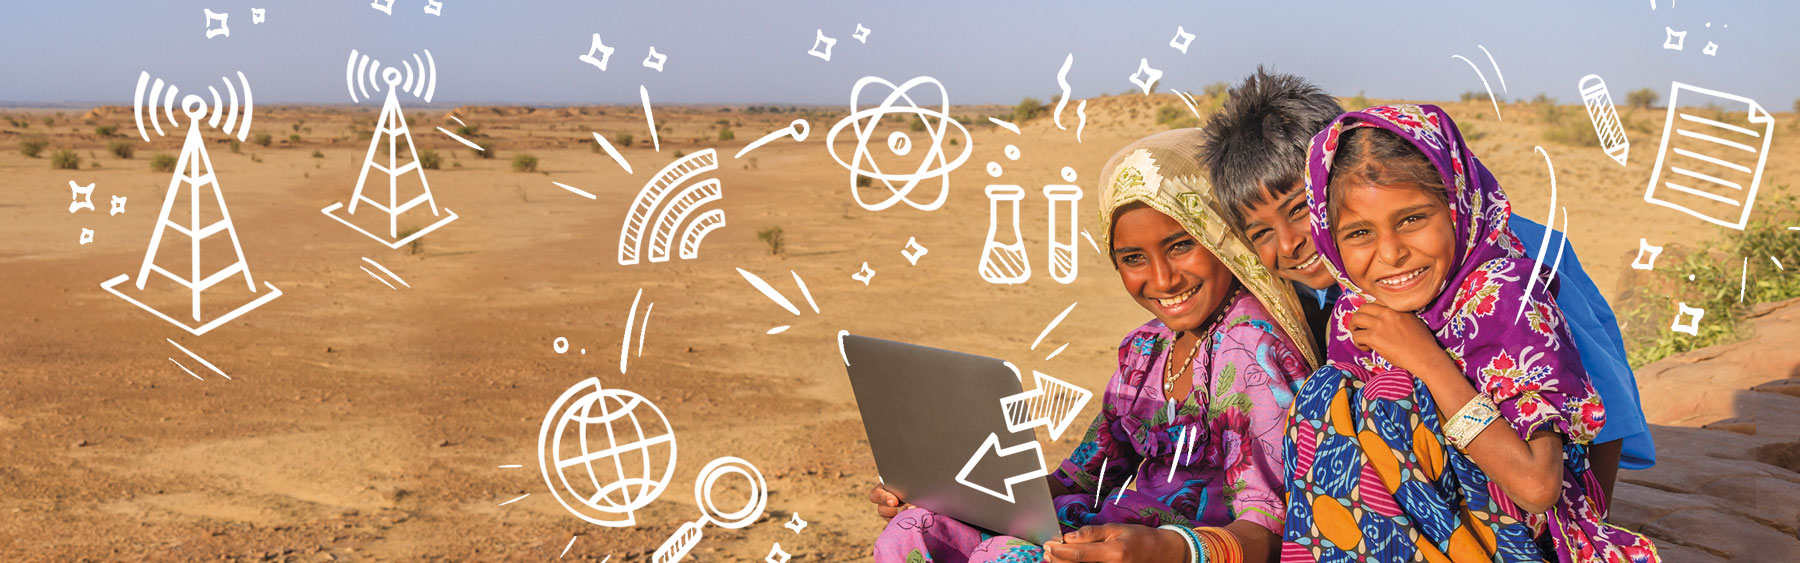 Foto von drei Kindern vor einem Laptop in einer trockenen Landschaft im Globalen Süden sowie Illustrationen zum Thema "Online-Konnektivität" 